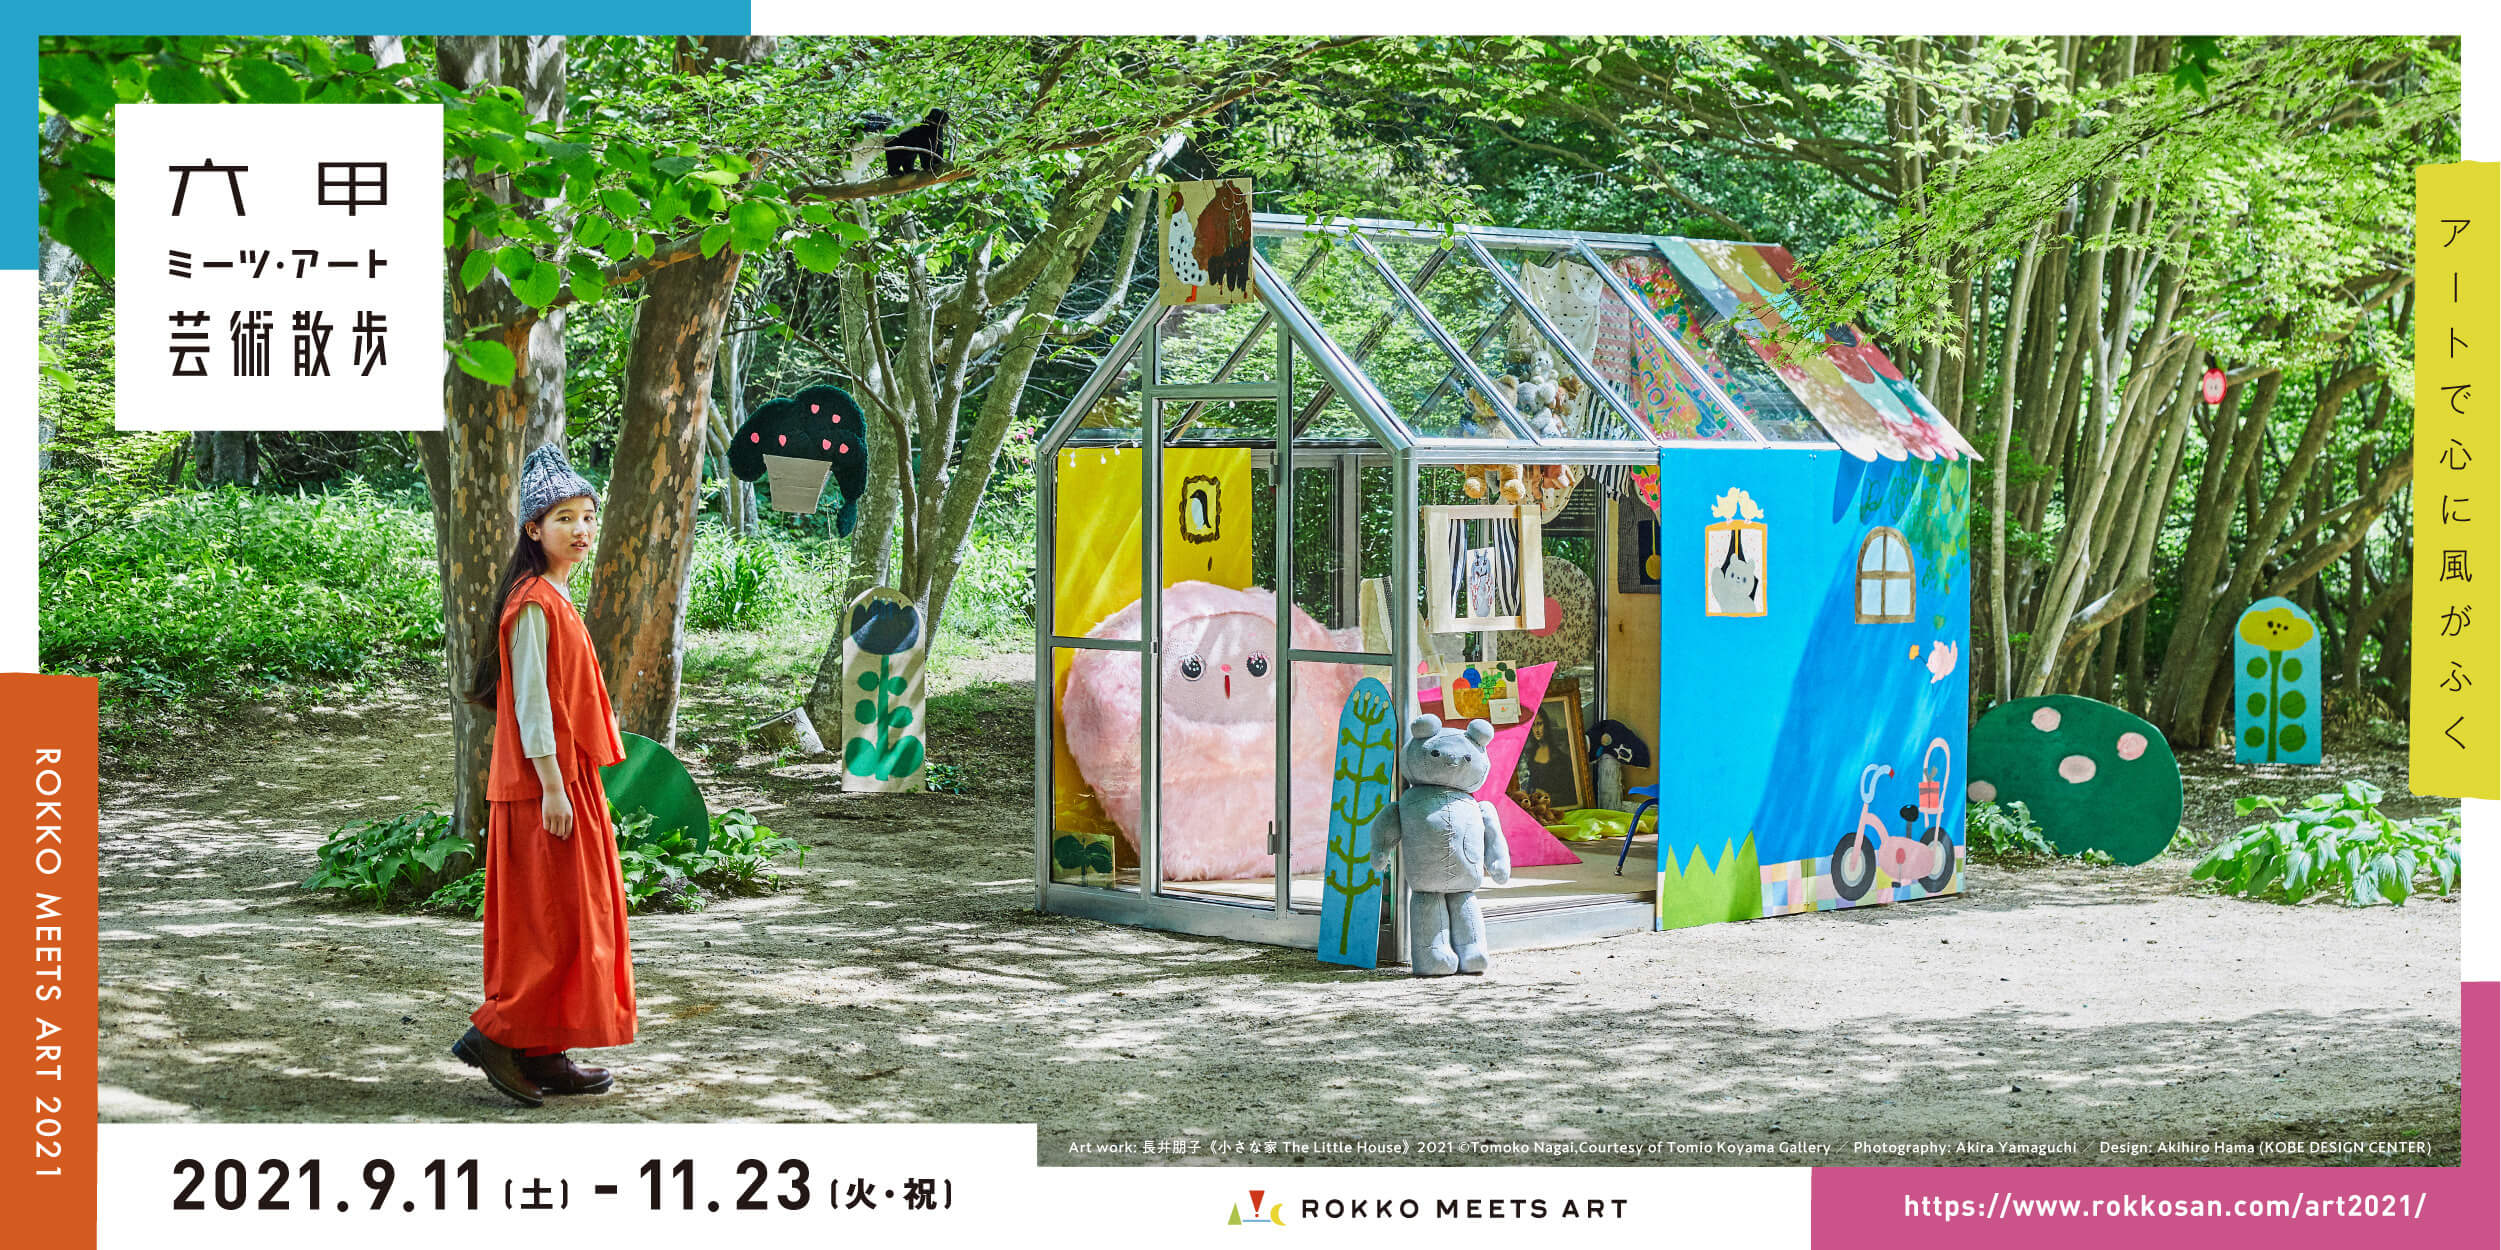 Rokko Meets Art Art Walk 2021 Main Visual